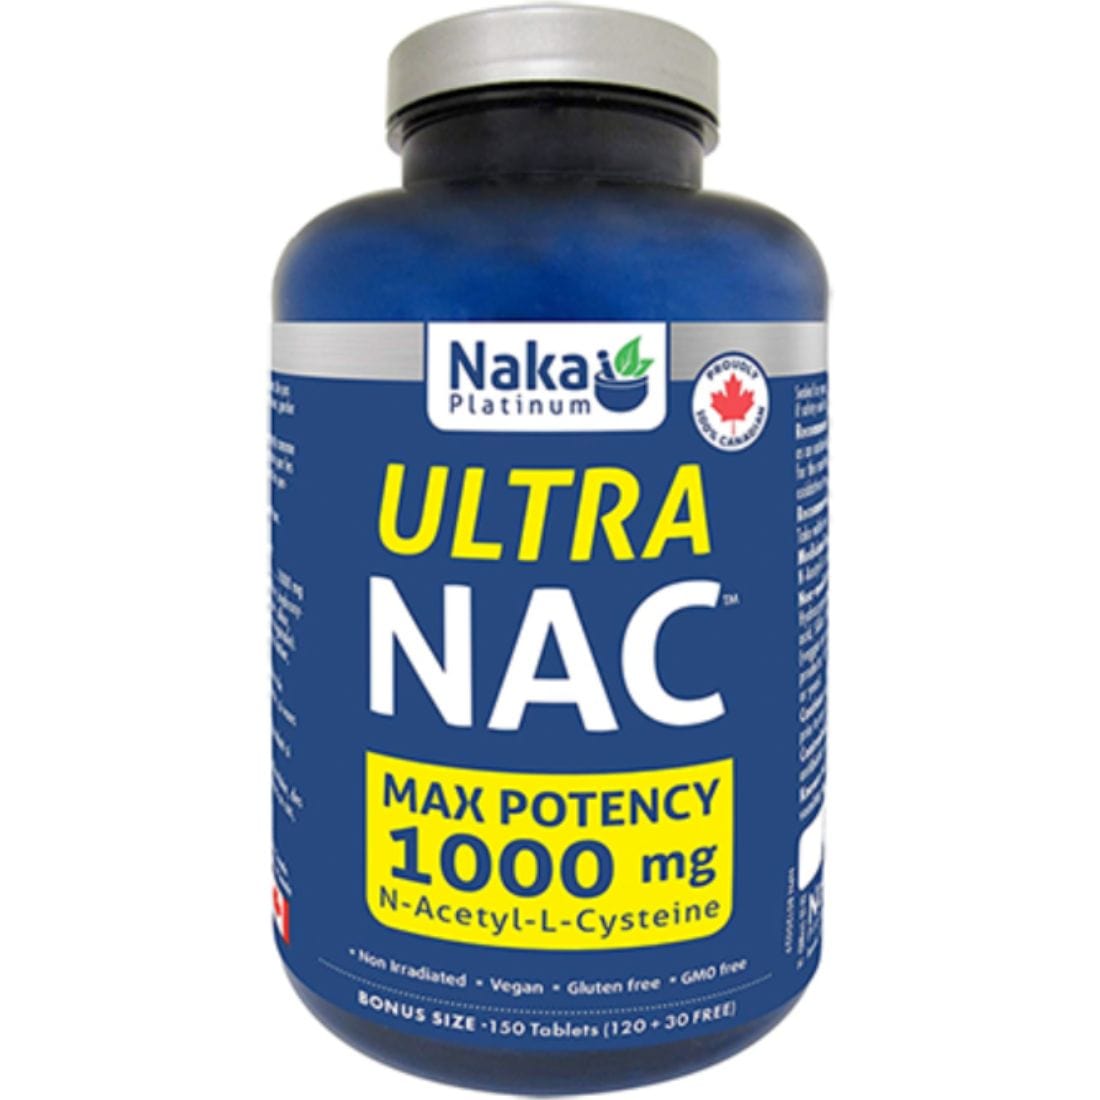 Naka Platinum Ultra NAC 1000mg, Max Potency Tablets